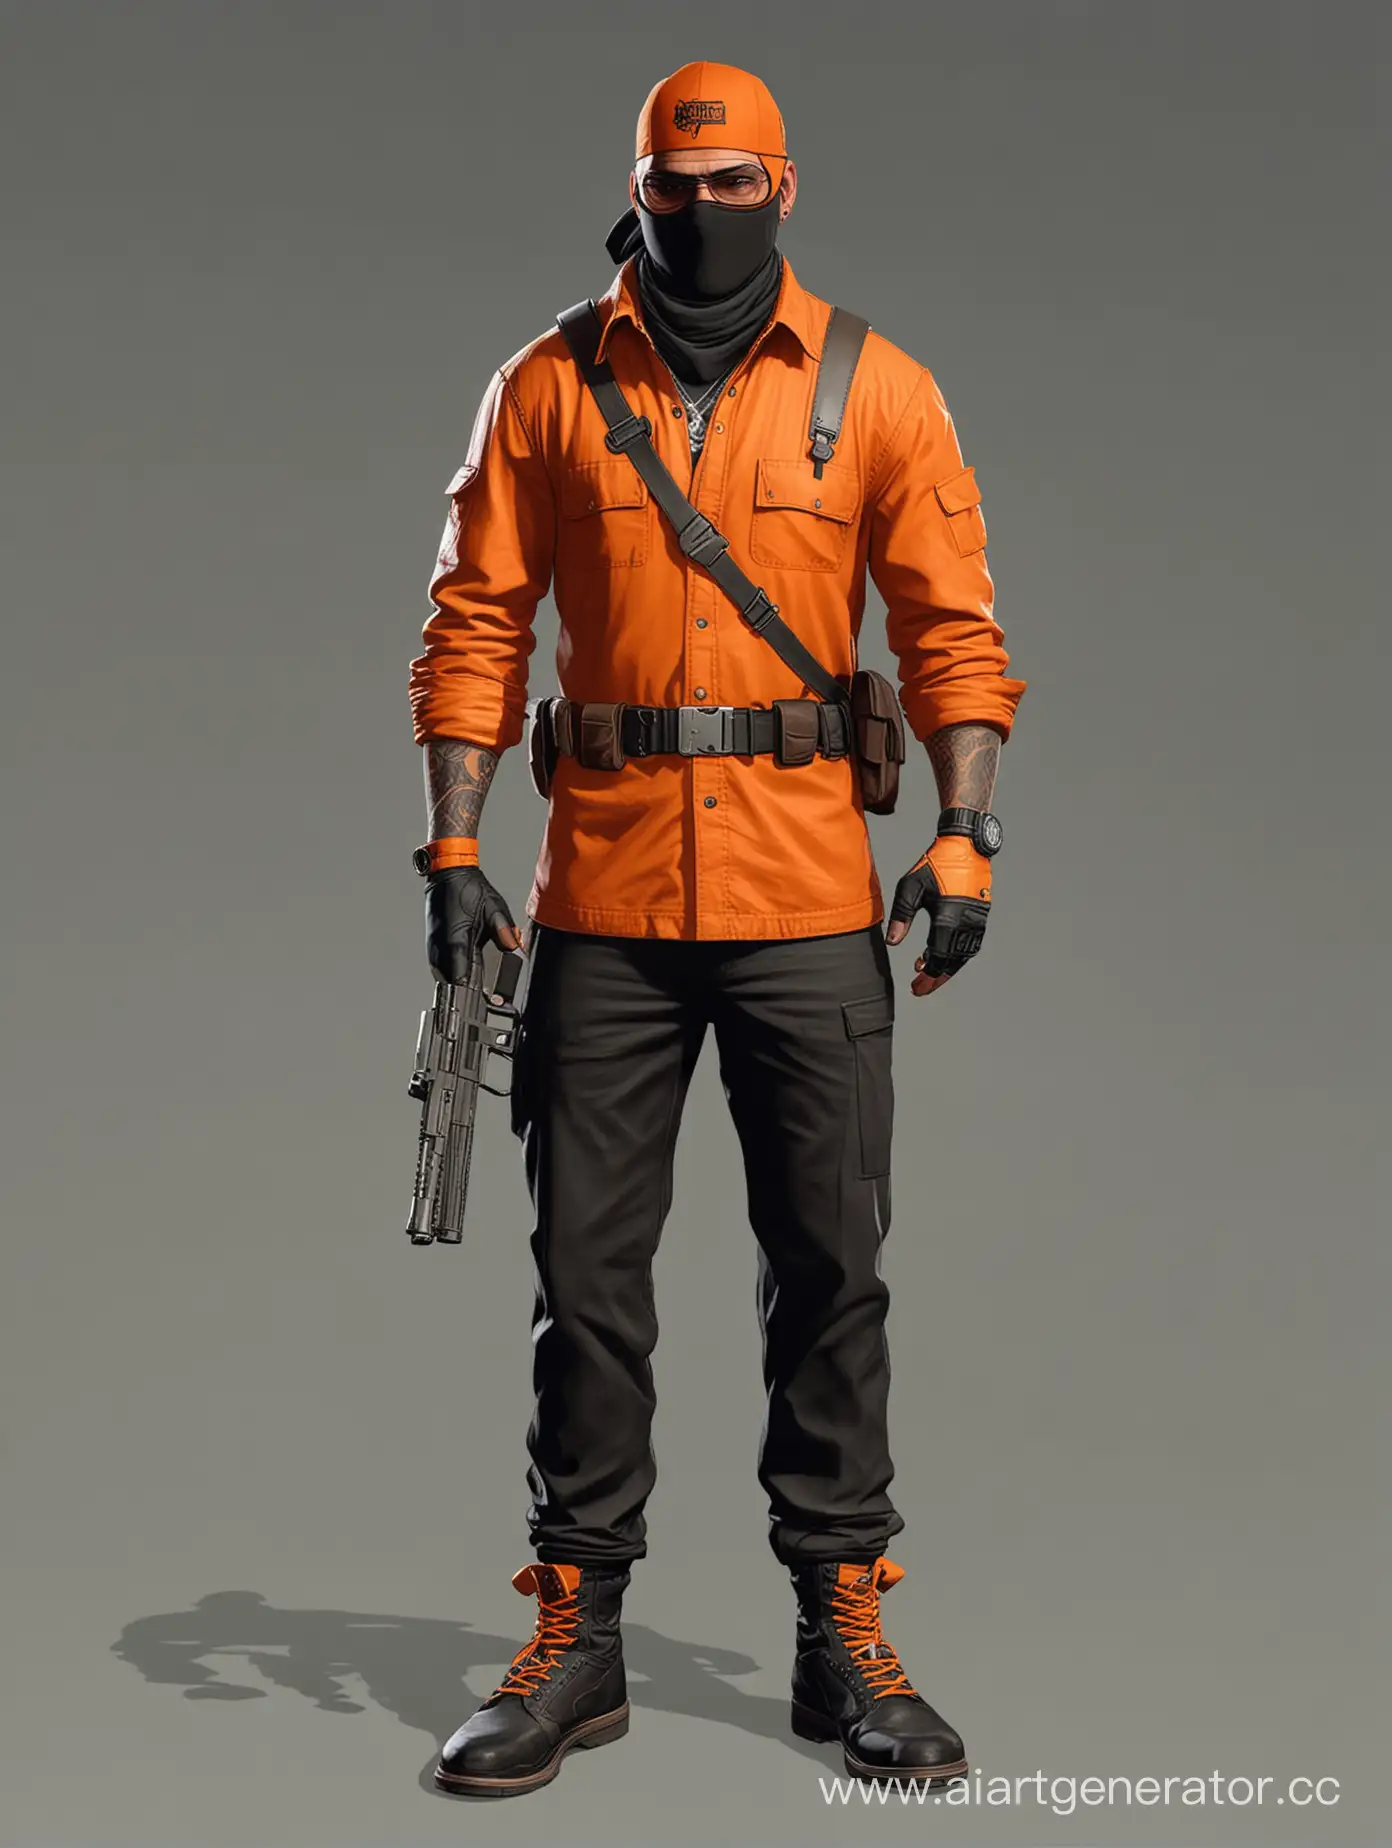 Нарисуй бандита в стиле гта 5 онлайн, в оранжевой одежде, в полный рост, с оружием в руке, больше деталей